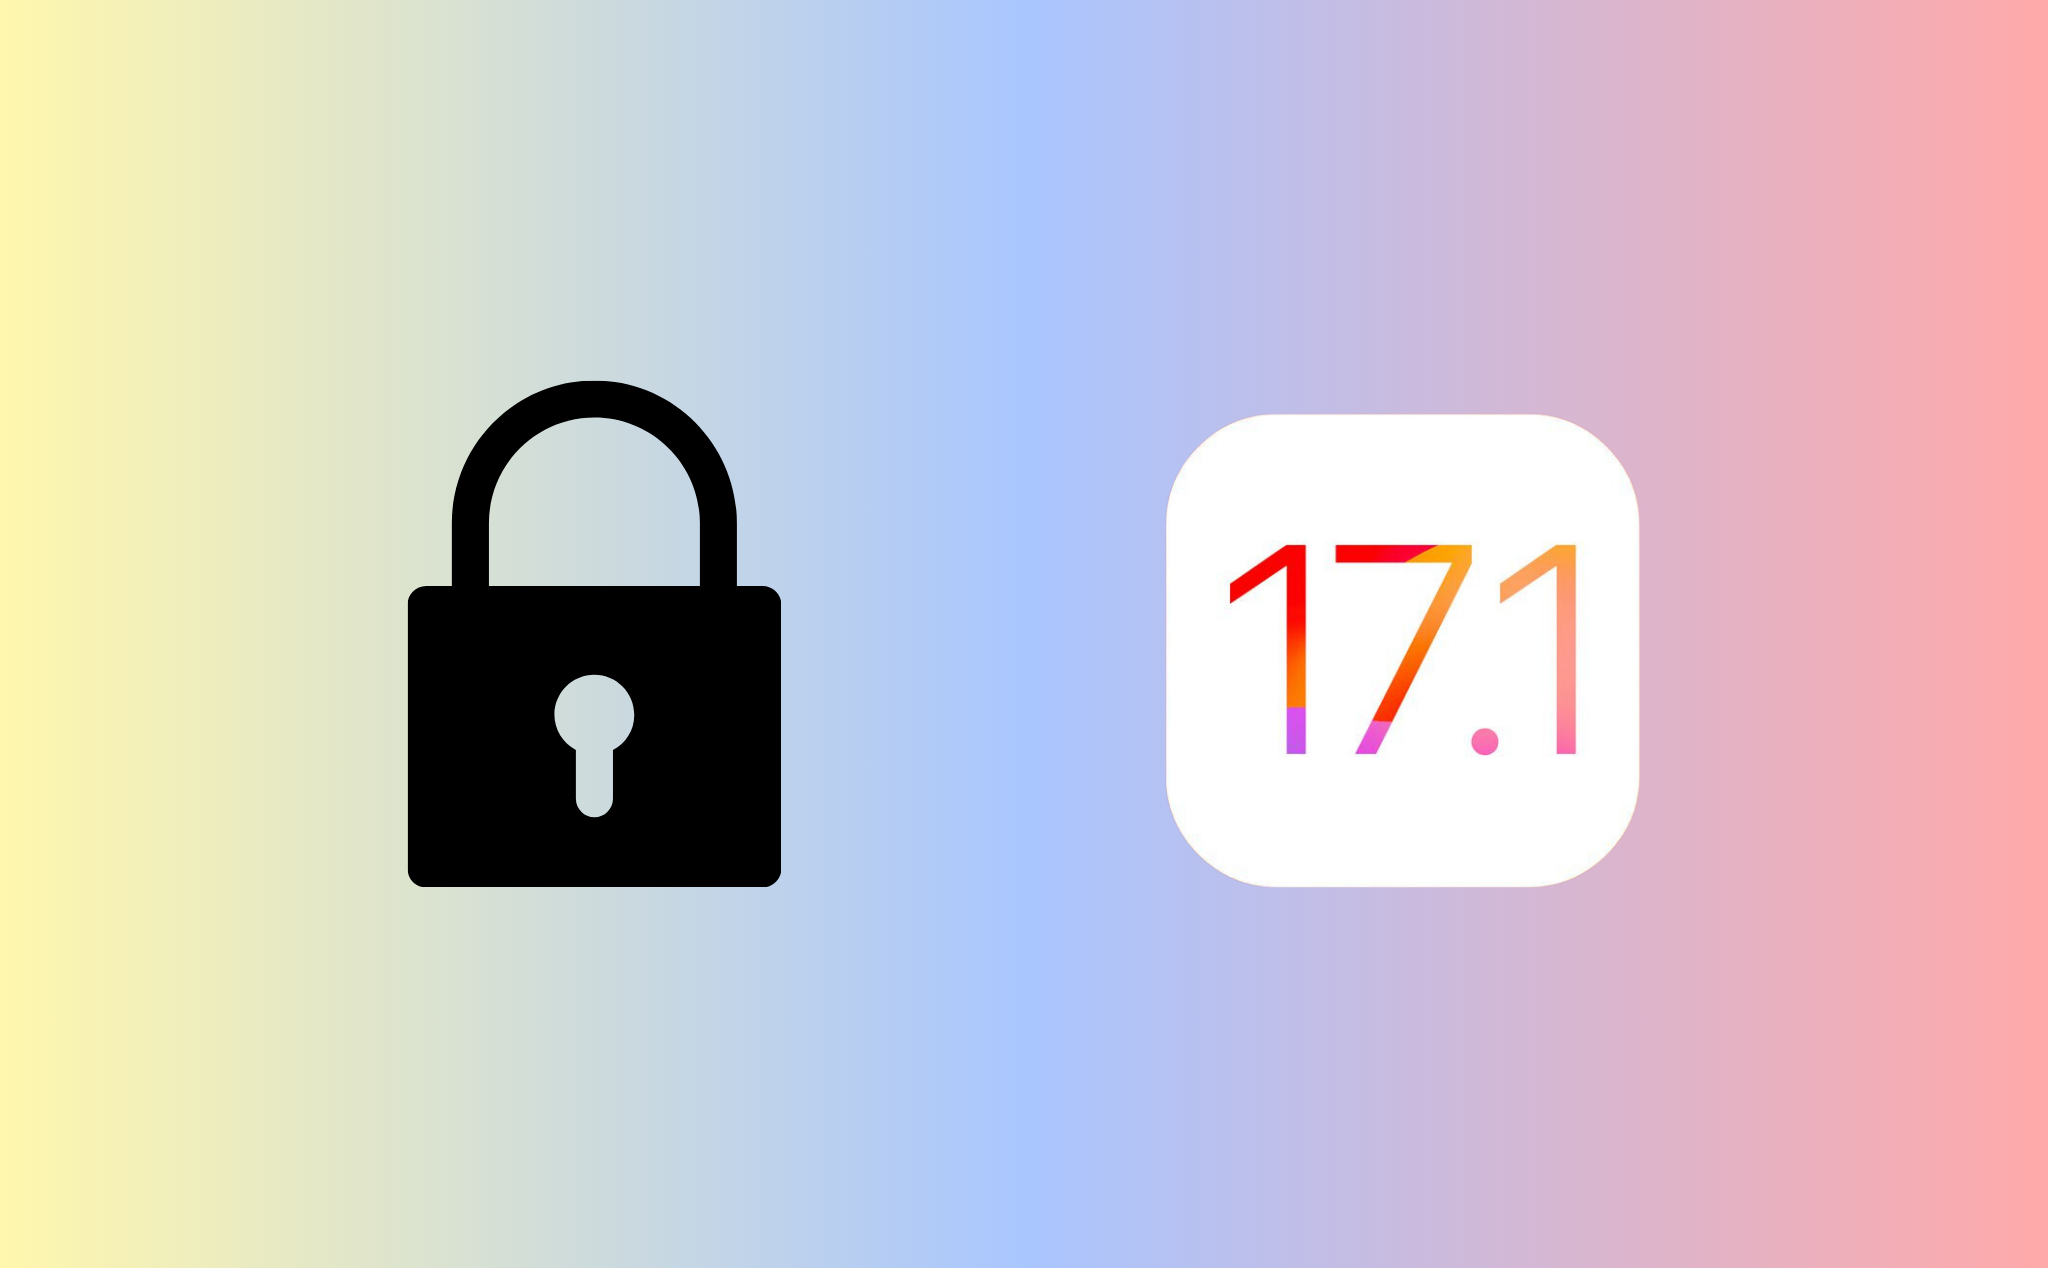 Apple khoá sign iOS 17.1, anh em cân nhắc trước khi nâng cấp iOS 17.1.1